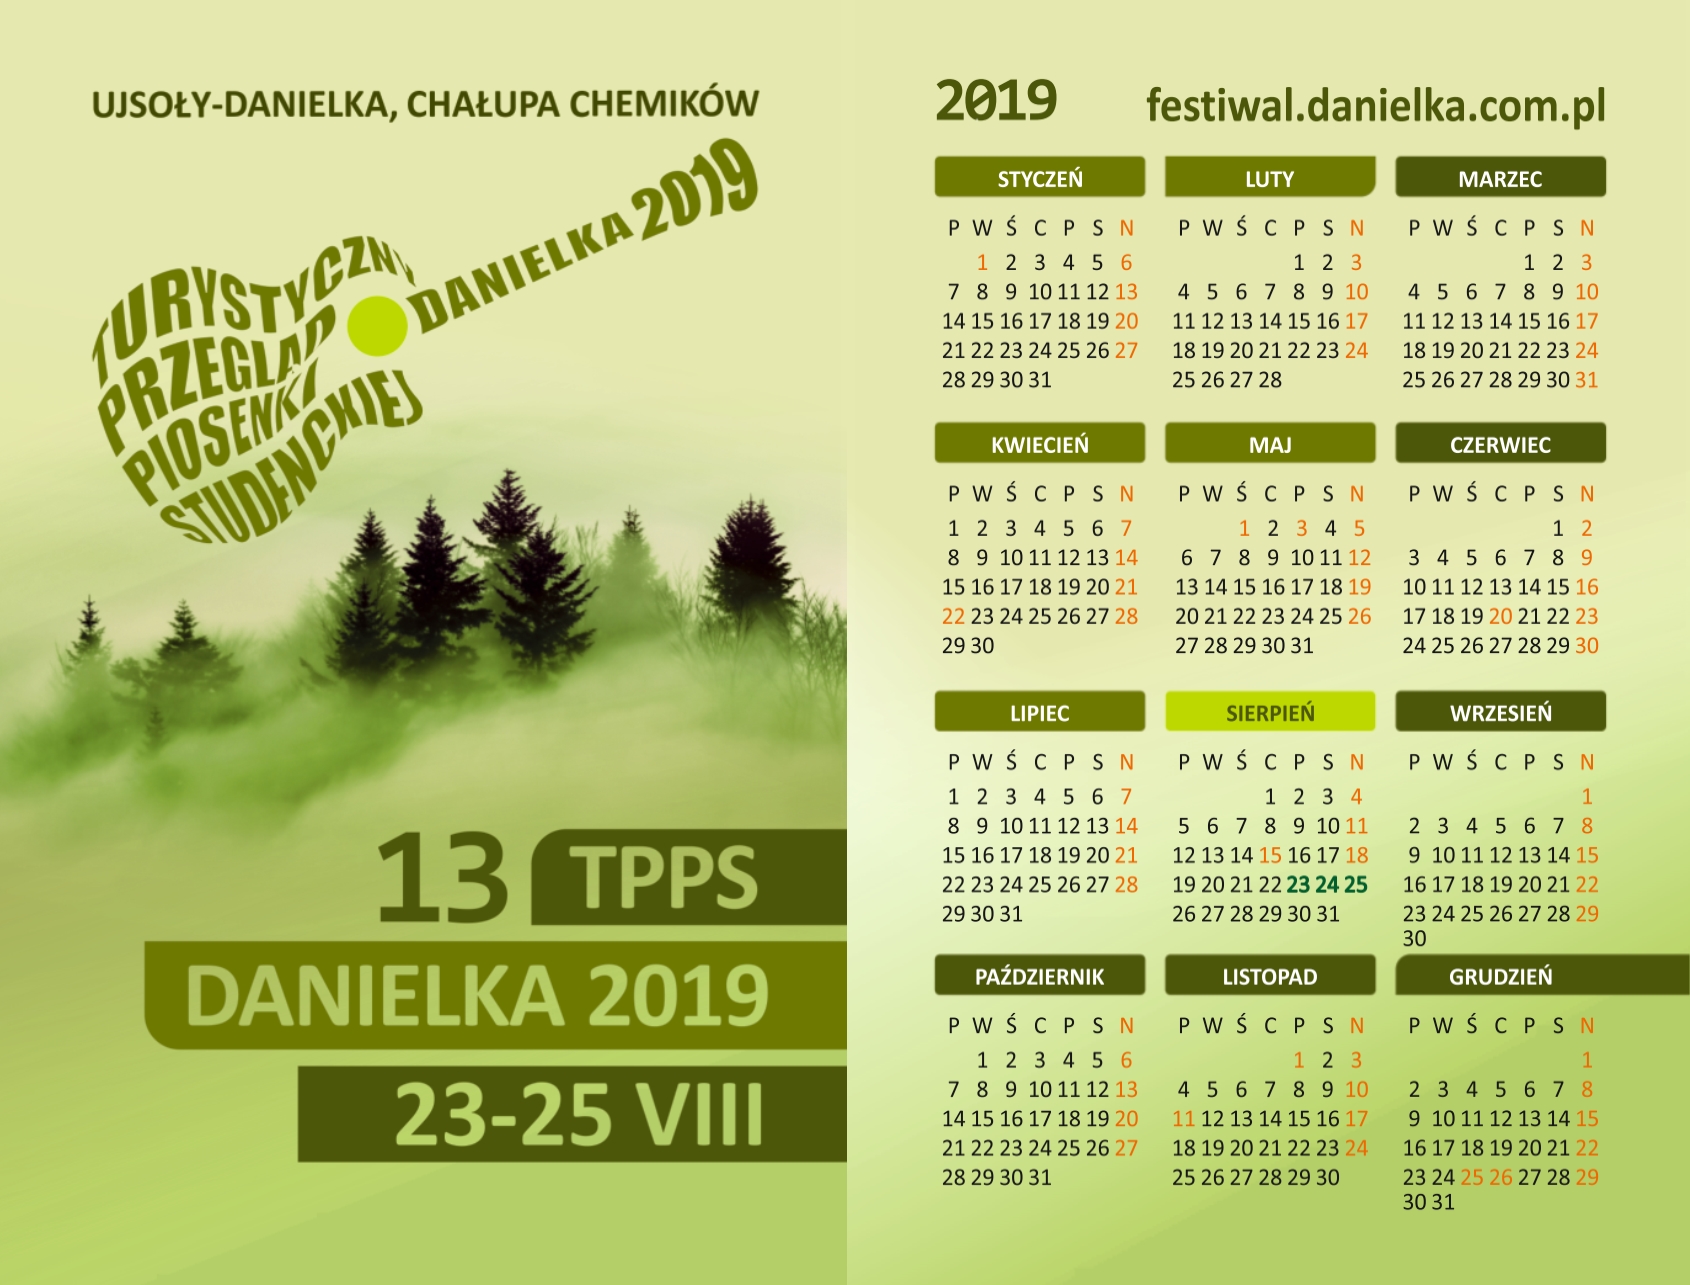 Danielkowe Kalendarzyki 2019 idą w świat